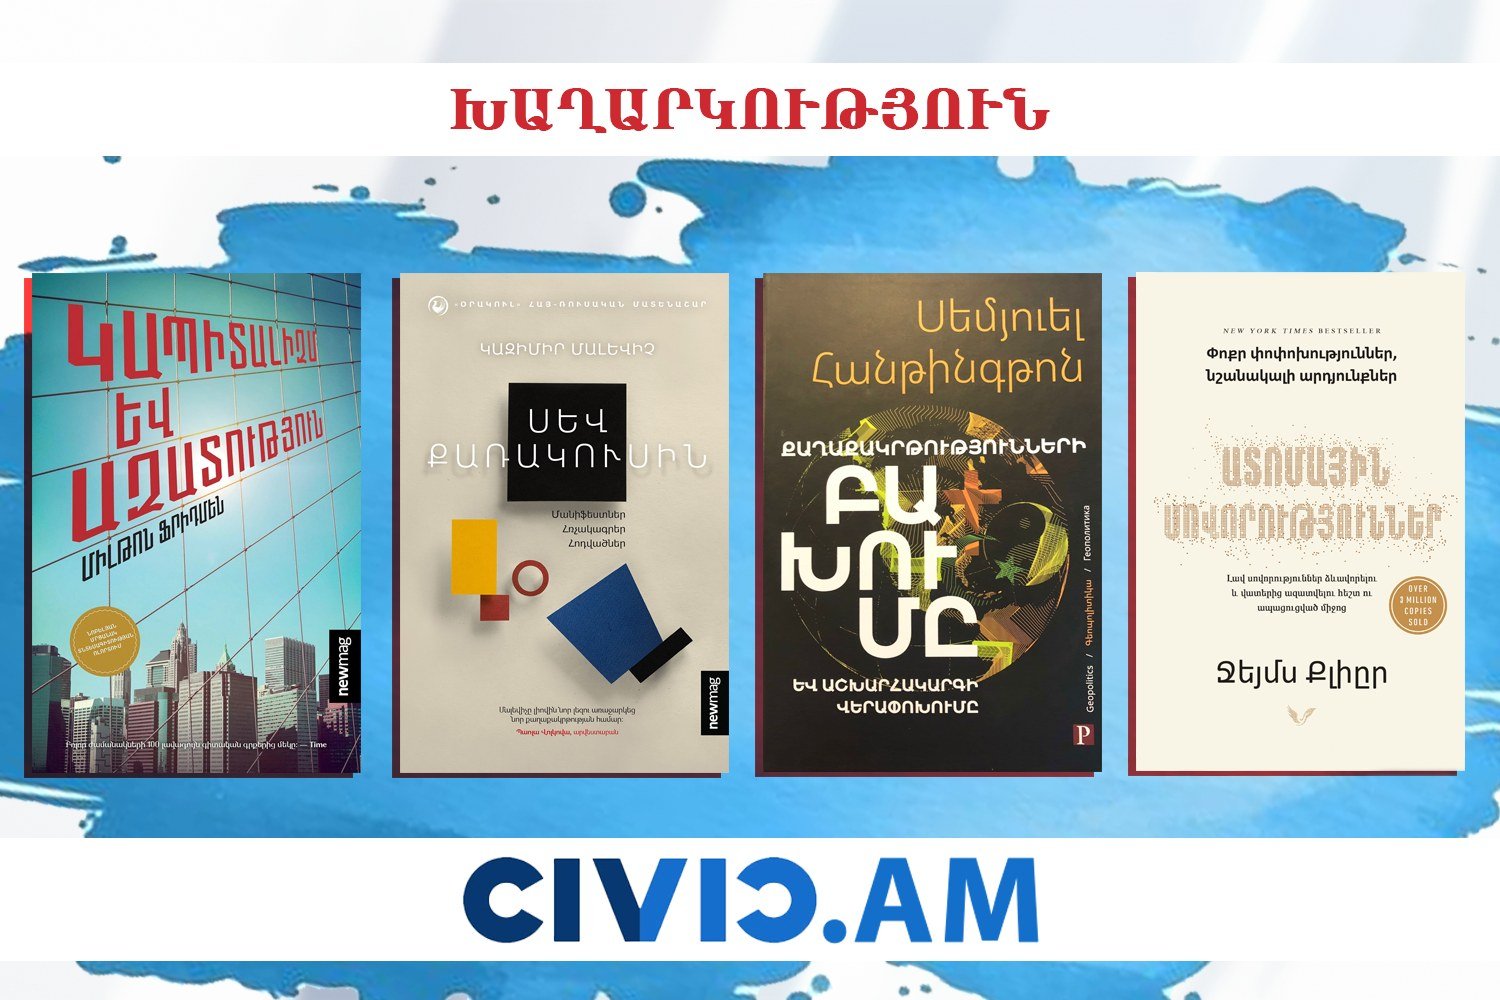 Գիրք նվիրելու օրվա կապակցությամբ՝ Civic.am լրատվականը խաղարկում է այս 4 հիանալի գրքերը